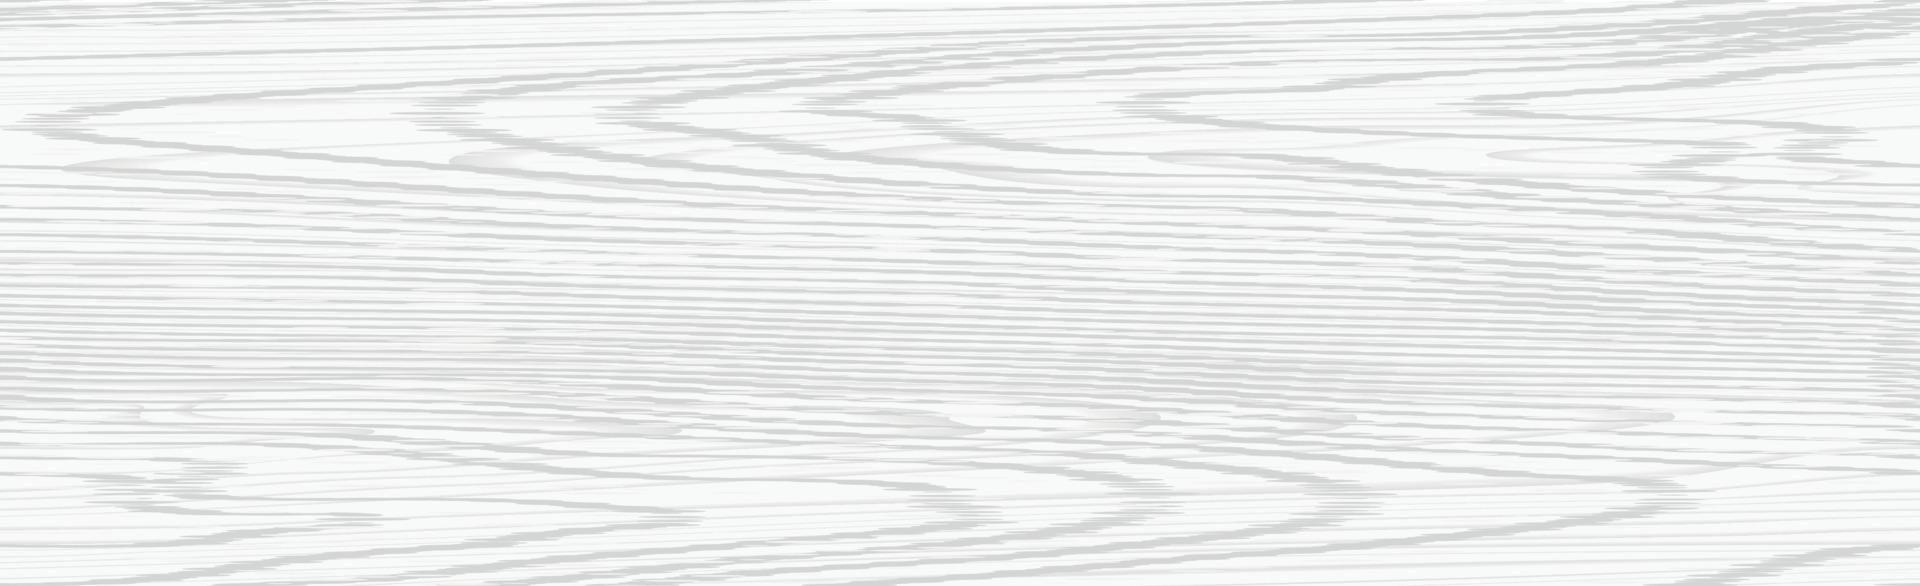 textura panorámica de madera clara con nudos - vector